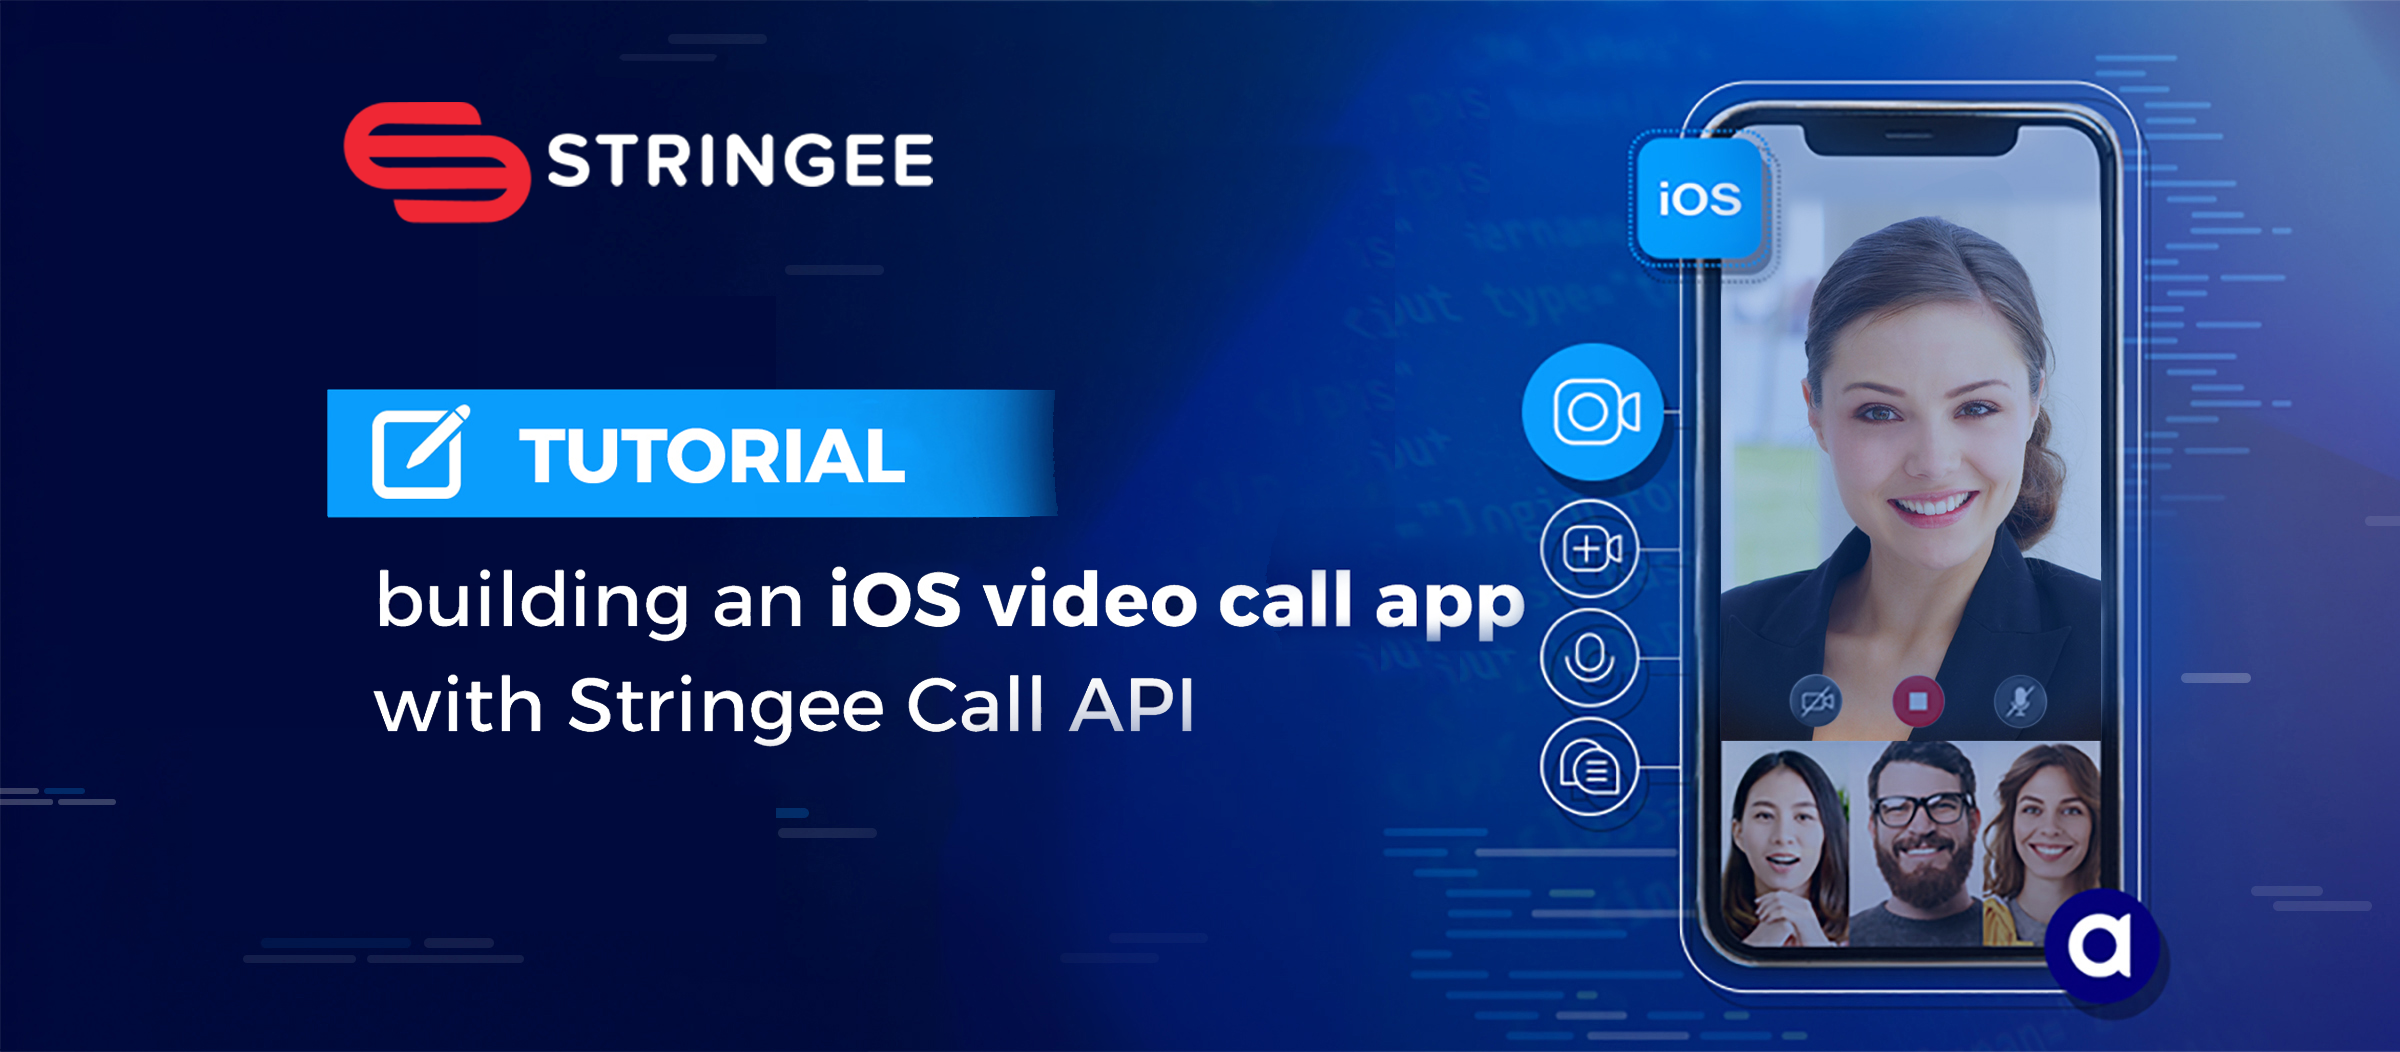 Hướng dẫn viết ứng dụng gọi video 1-1 trên nền tảng iOS với Stringee Call API